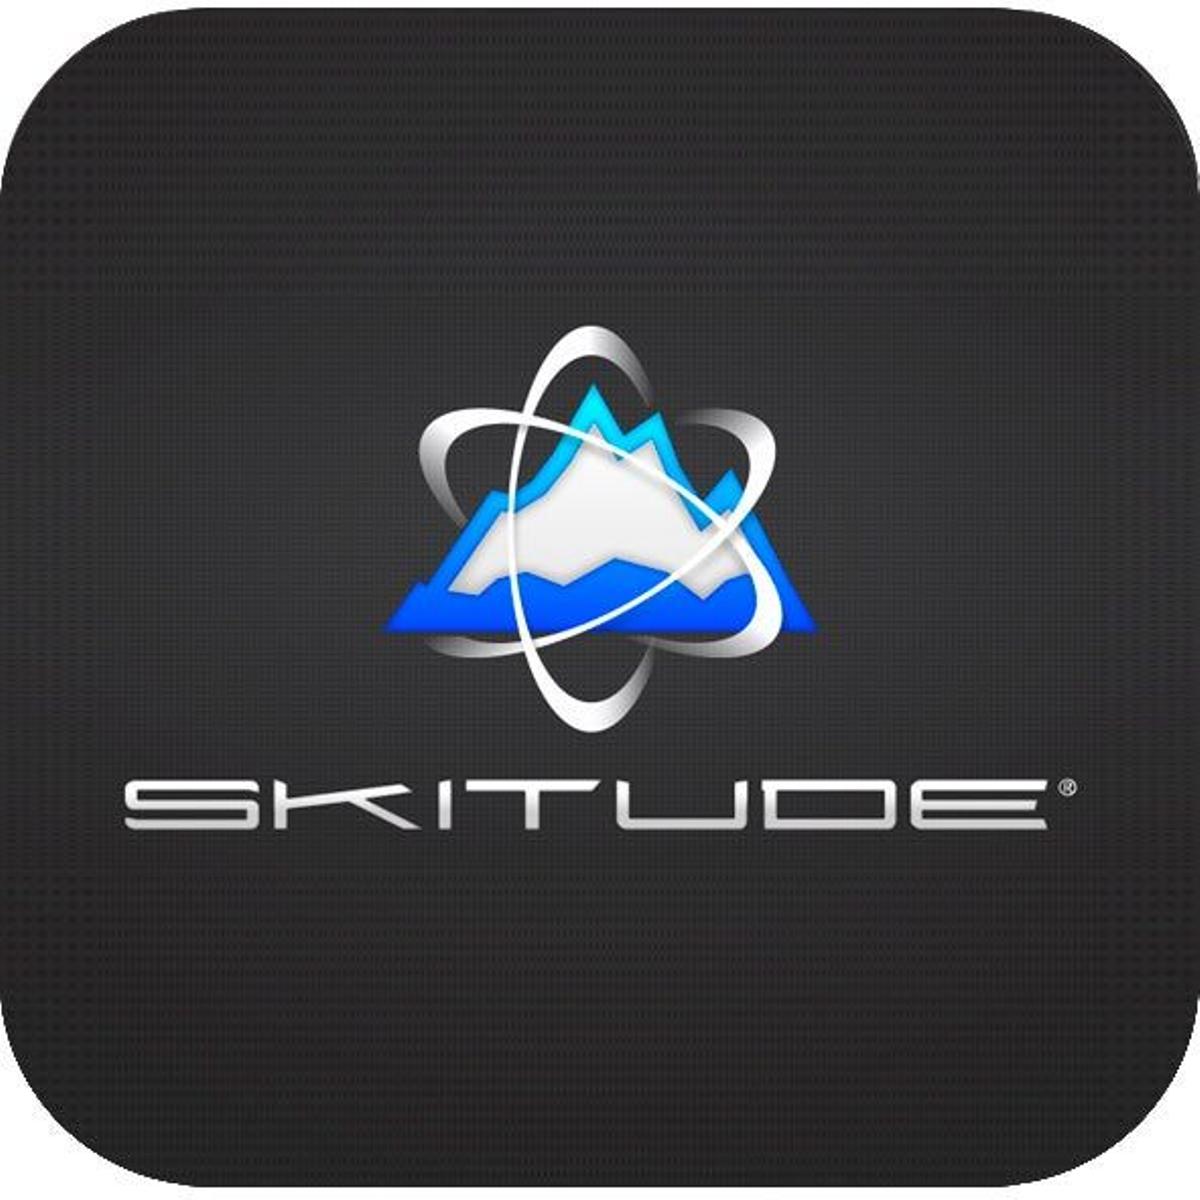 Skitude